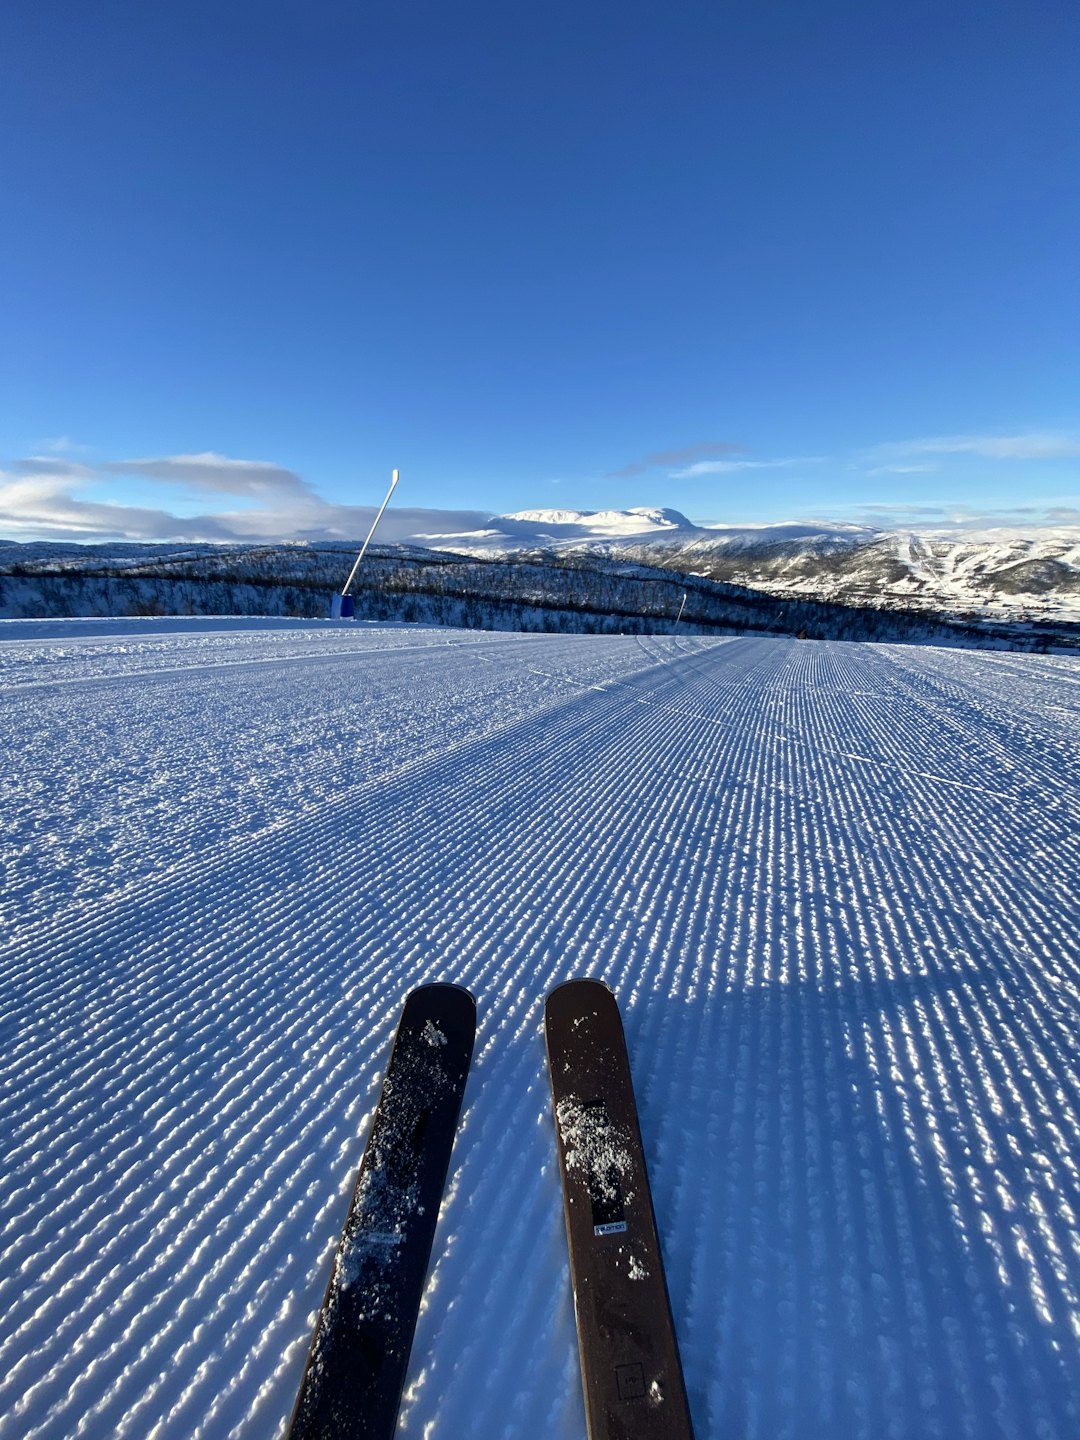 FINE FORHOLD: Kevin Eikrehagen har testet skiene de siste dagene, og forteller om gode forhold både i og utenfor løypene. Foto: Kevin Eikrehagen